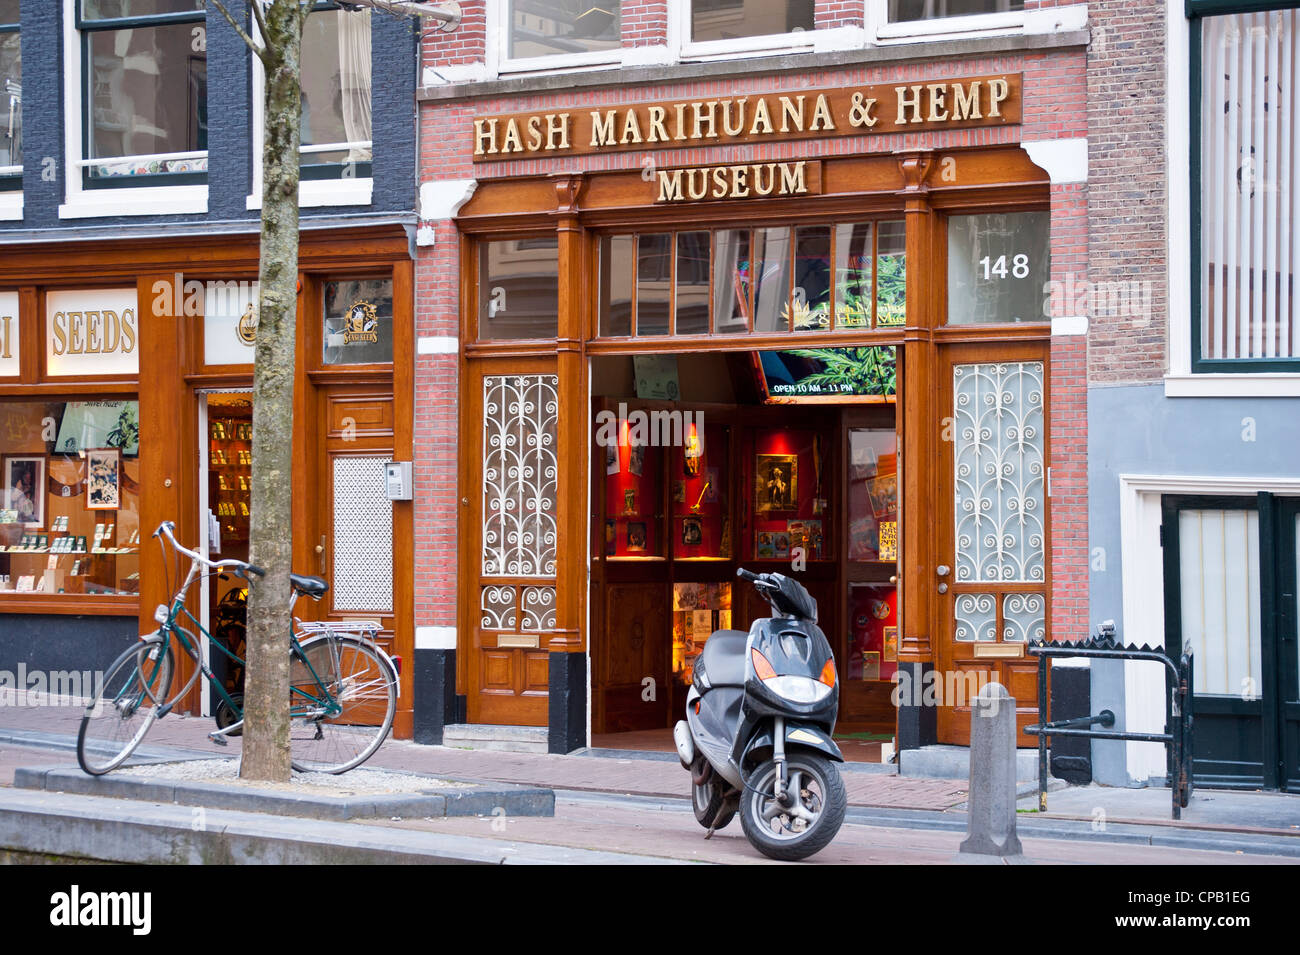 AMSTERDAM, NETHERLANDS - MAY 07, 2012:  Hash Marihuana and Hemp Museum in Amsterdam Stock Photo